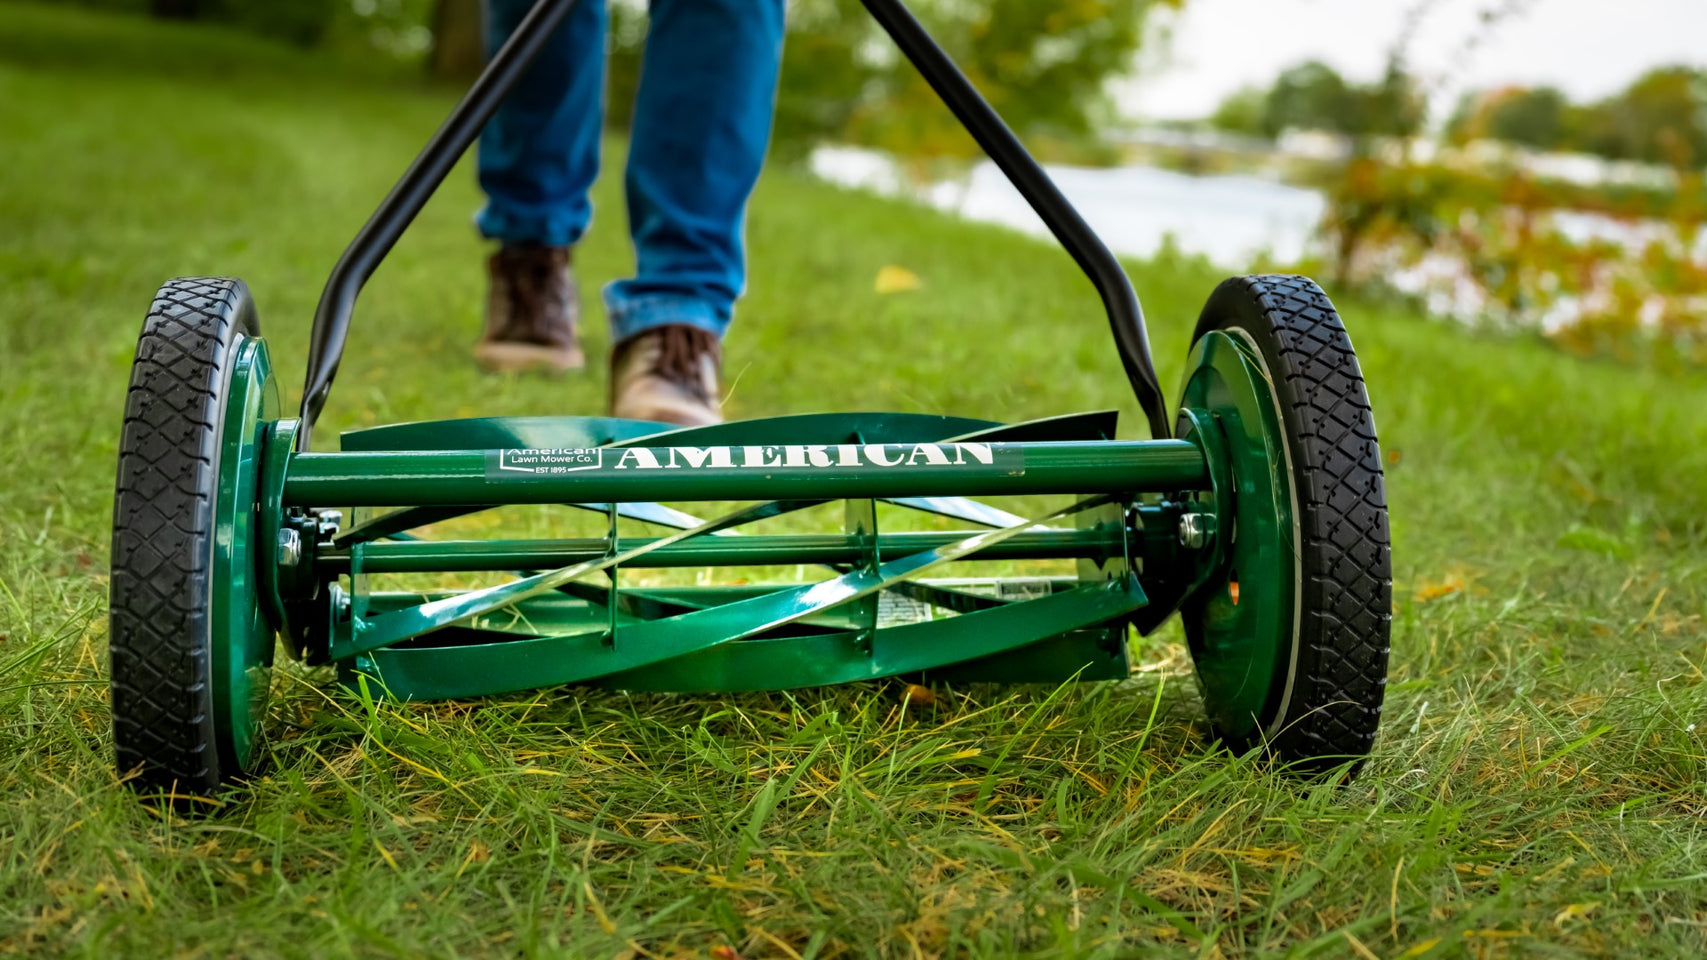 reel lawn mower in Home - Outdoor & Garden in Ontario - Kijiji Canada